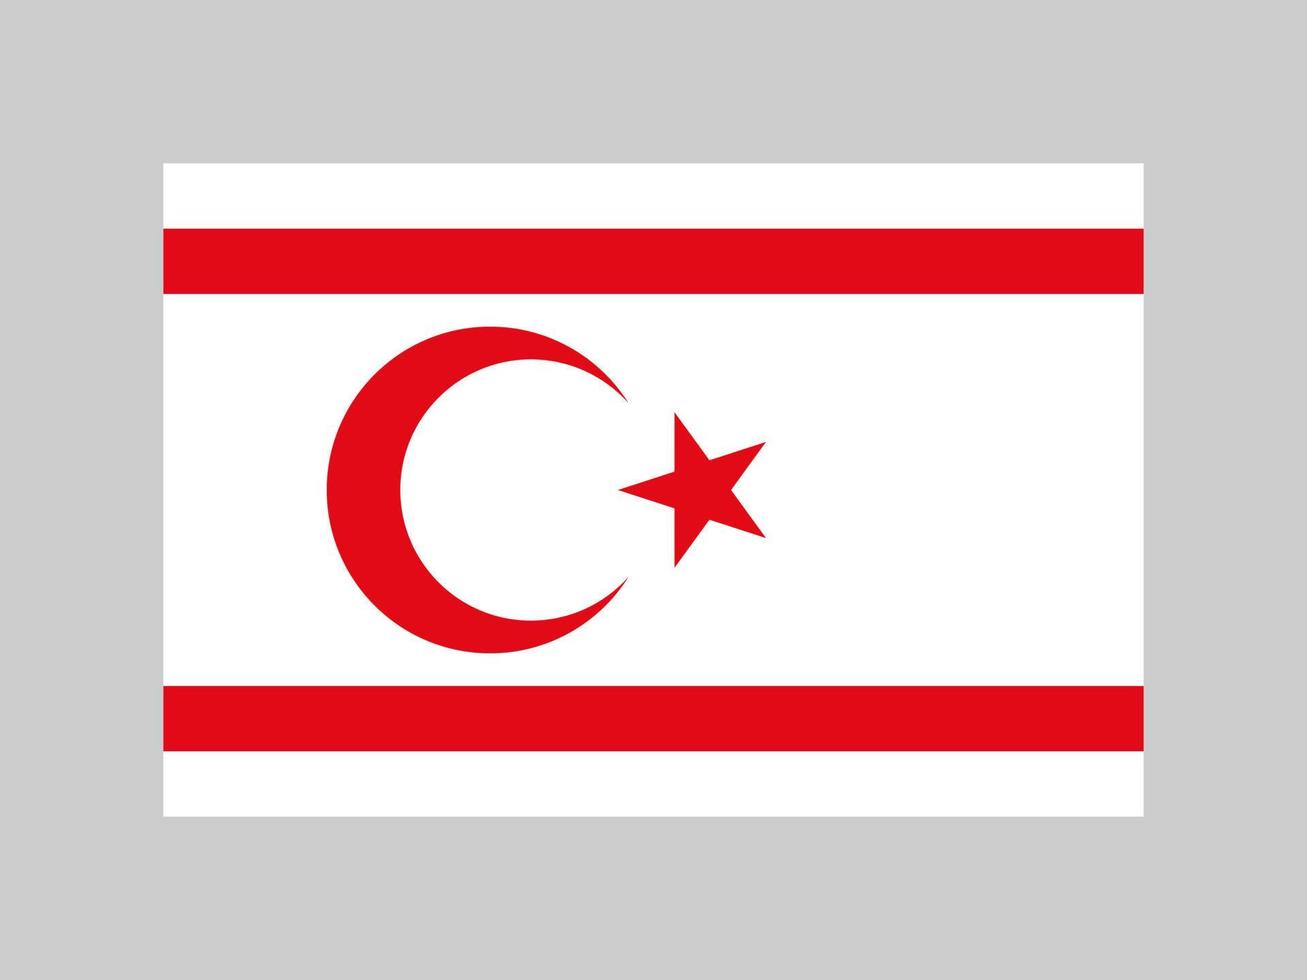 turkiska republiken norra Cyperns flagga, officiella färger och proportioner. vektor illustration.